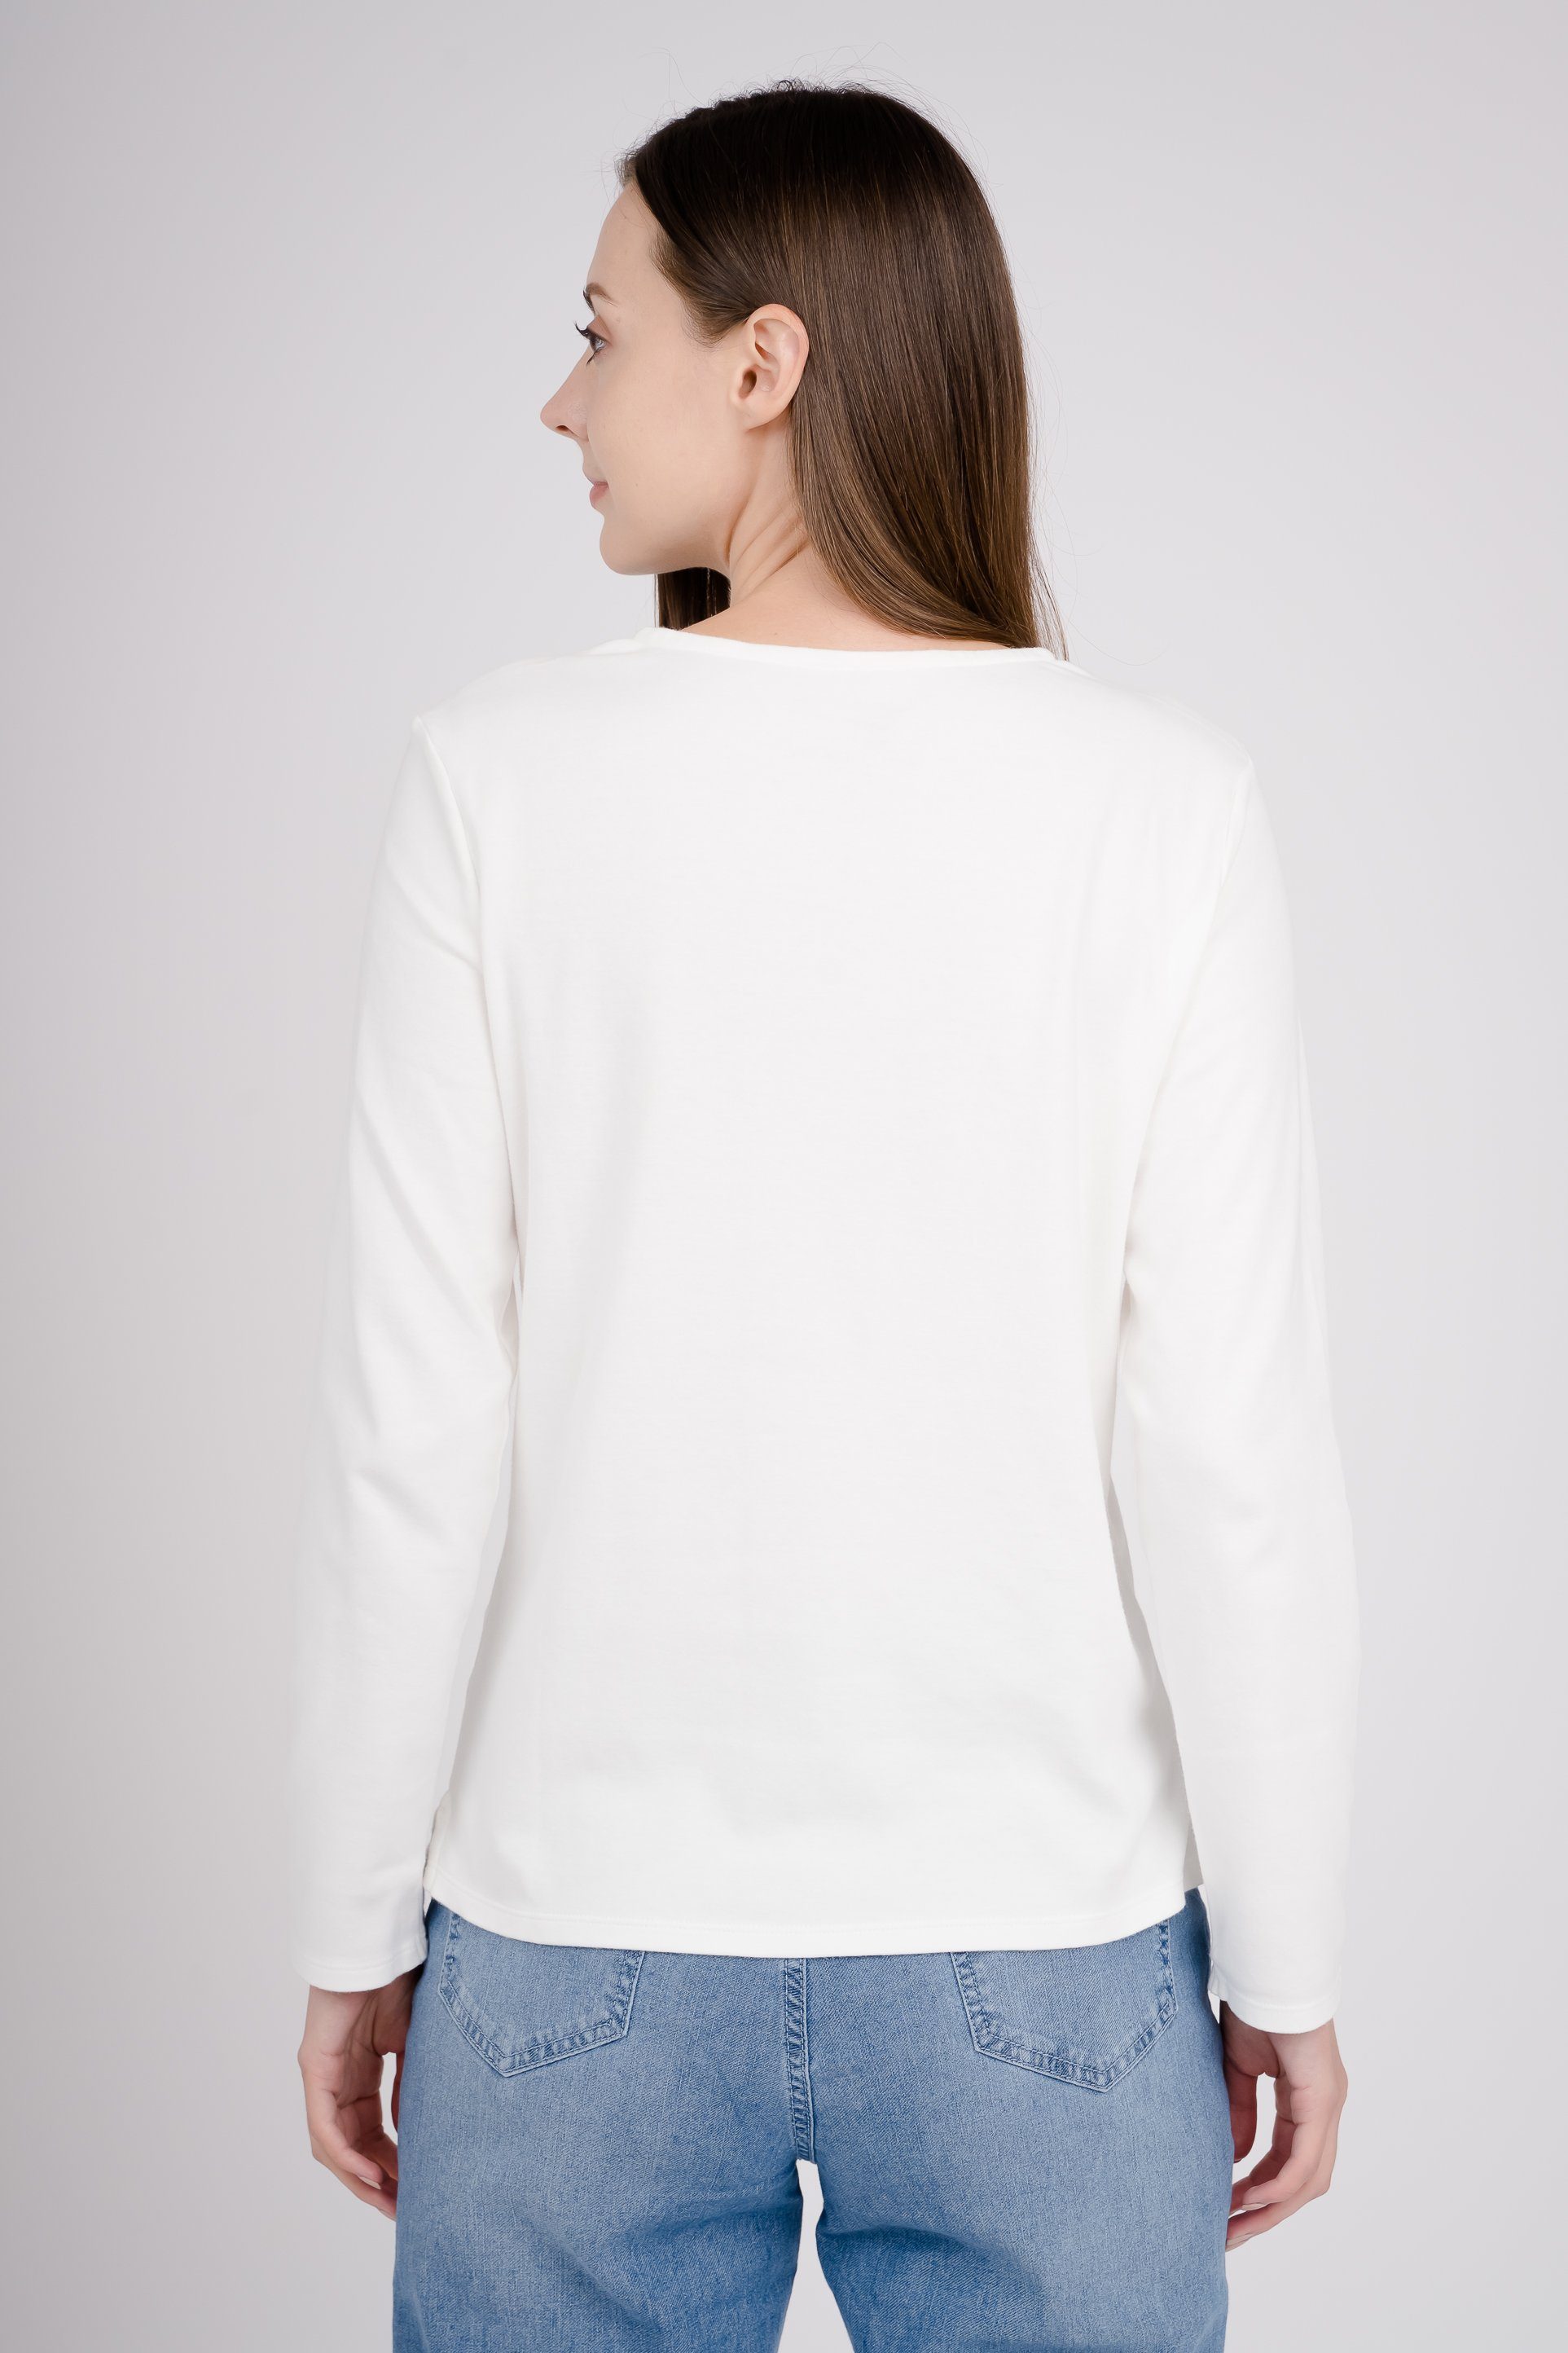 GIORDANO Langarmshirt mit elastischem Material weiß